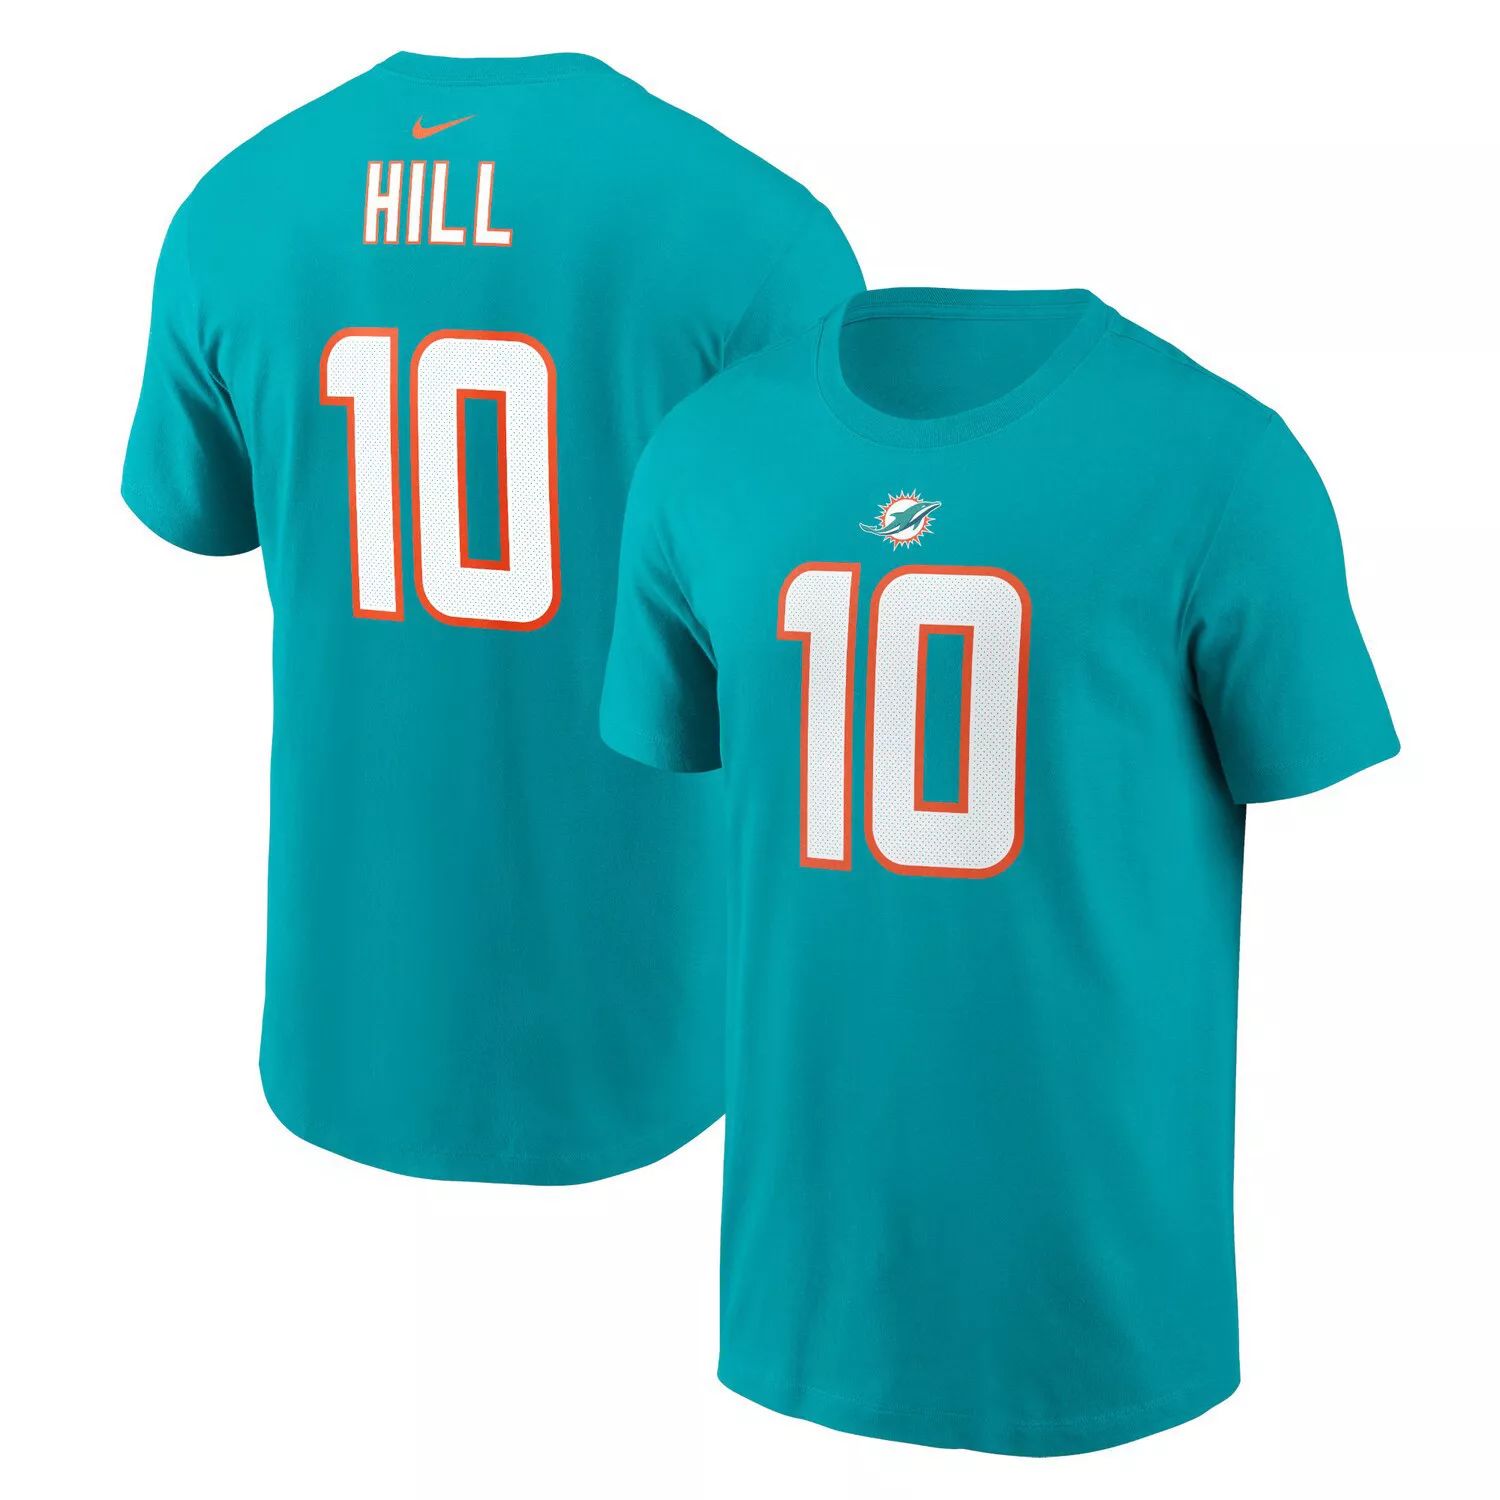 Мужская футболка Nike Tyreek Hill Aqua Miami Dolphins с именем и номером игрока